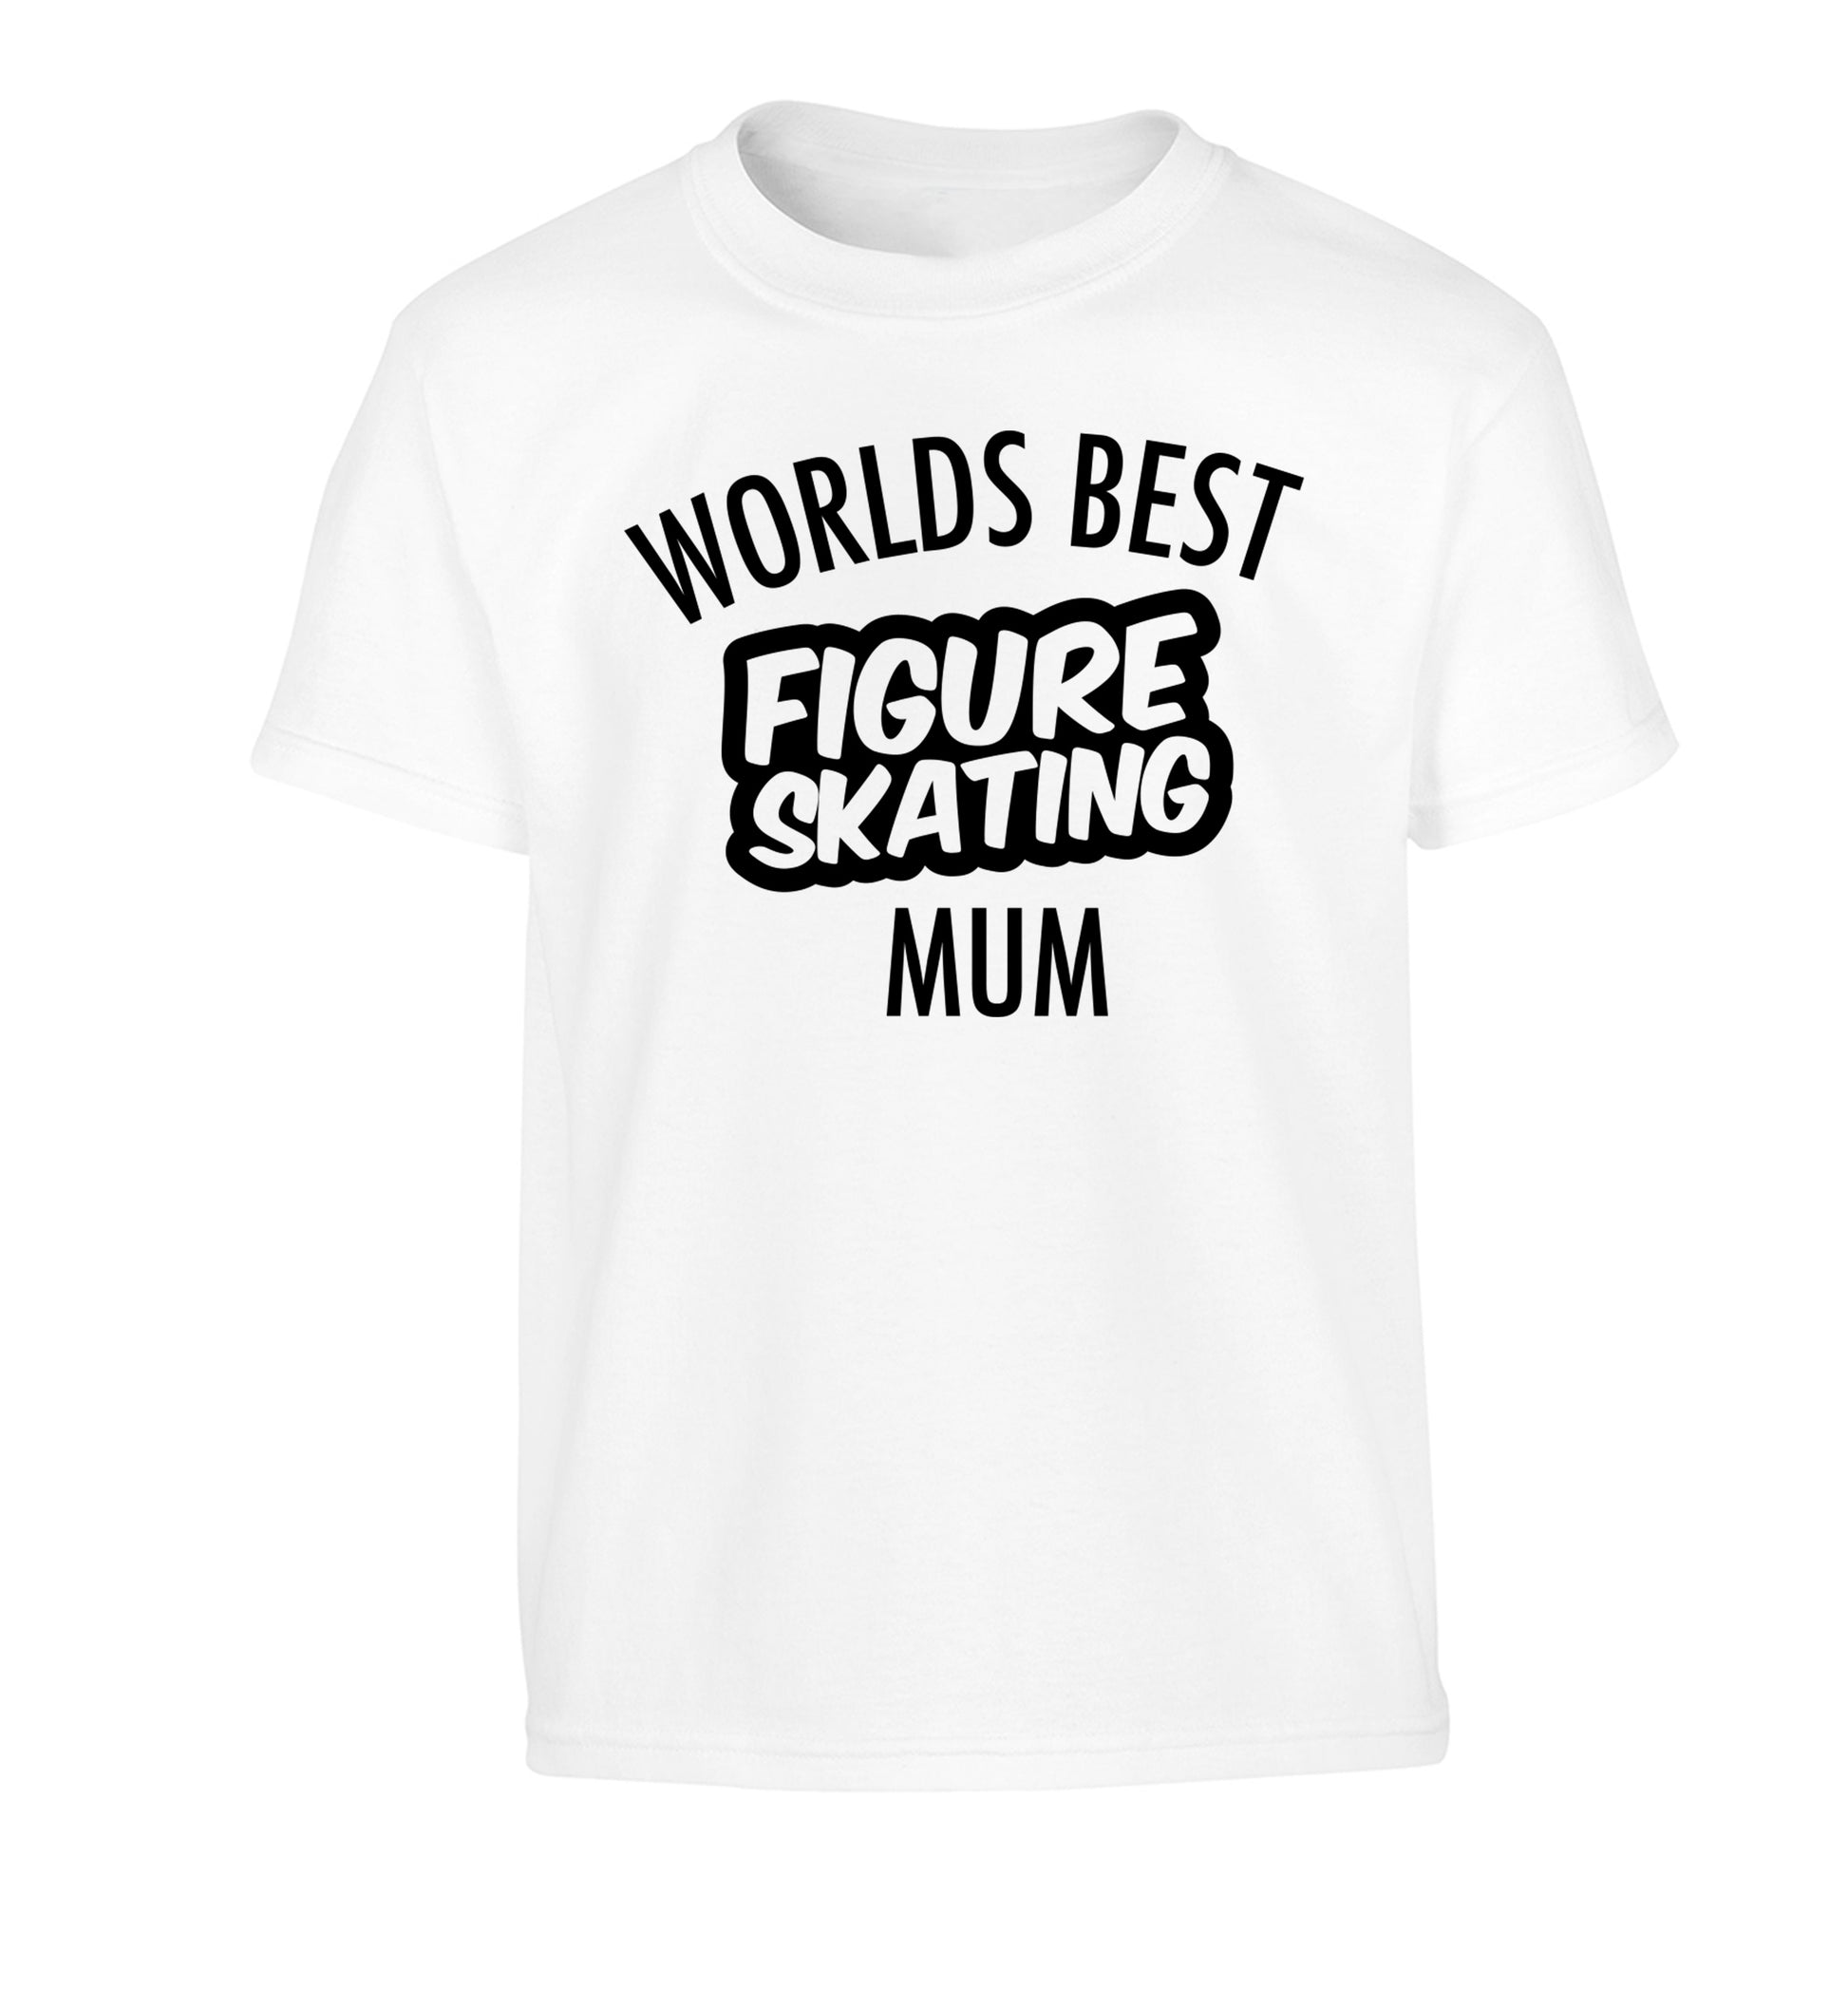 Worlds best figure skating mum Children's white Tshirt 12-14 Years